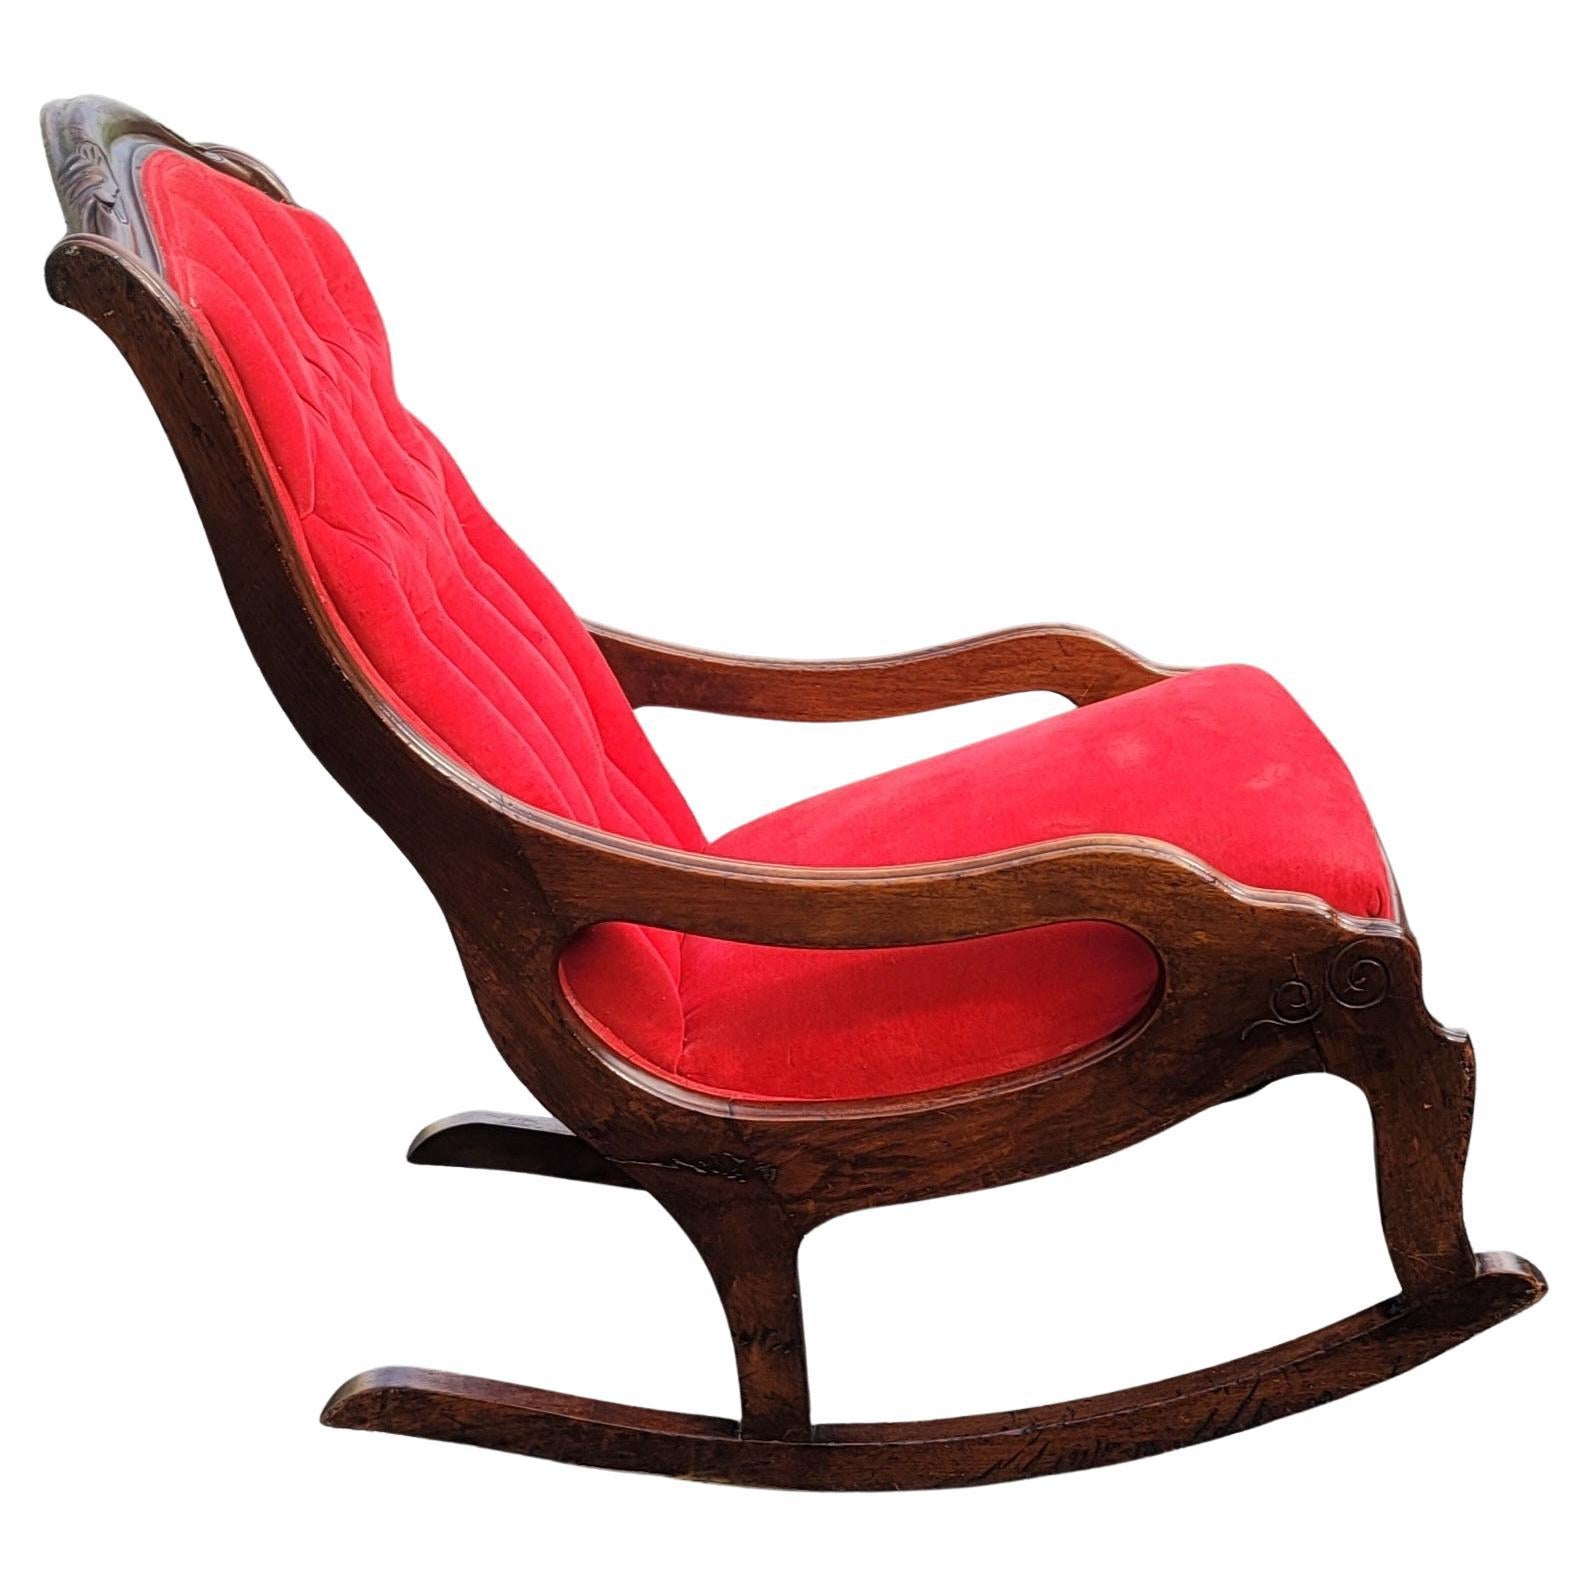 Absolut prächtiger Mahagoni-Rahmen im spätviktorianischen Stil, mit rotem Samt gepolsterter Sitz und getufteter Rückenlehne. Der Samt ist in gutem Zustand und der Mahagoni-Rahmen zeigt eine reizvolle Patina. Maße: 21